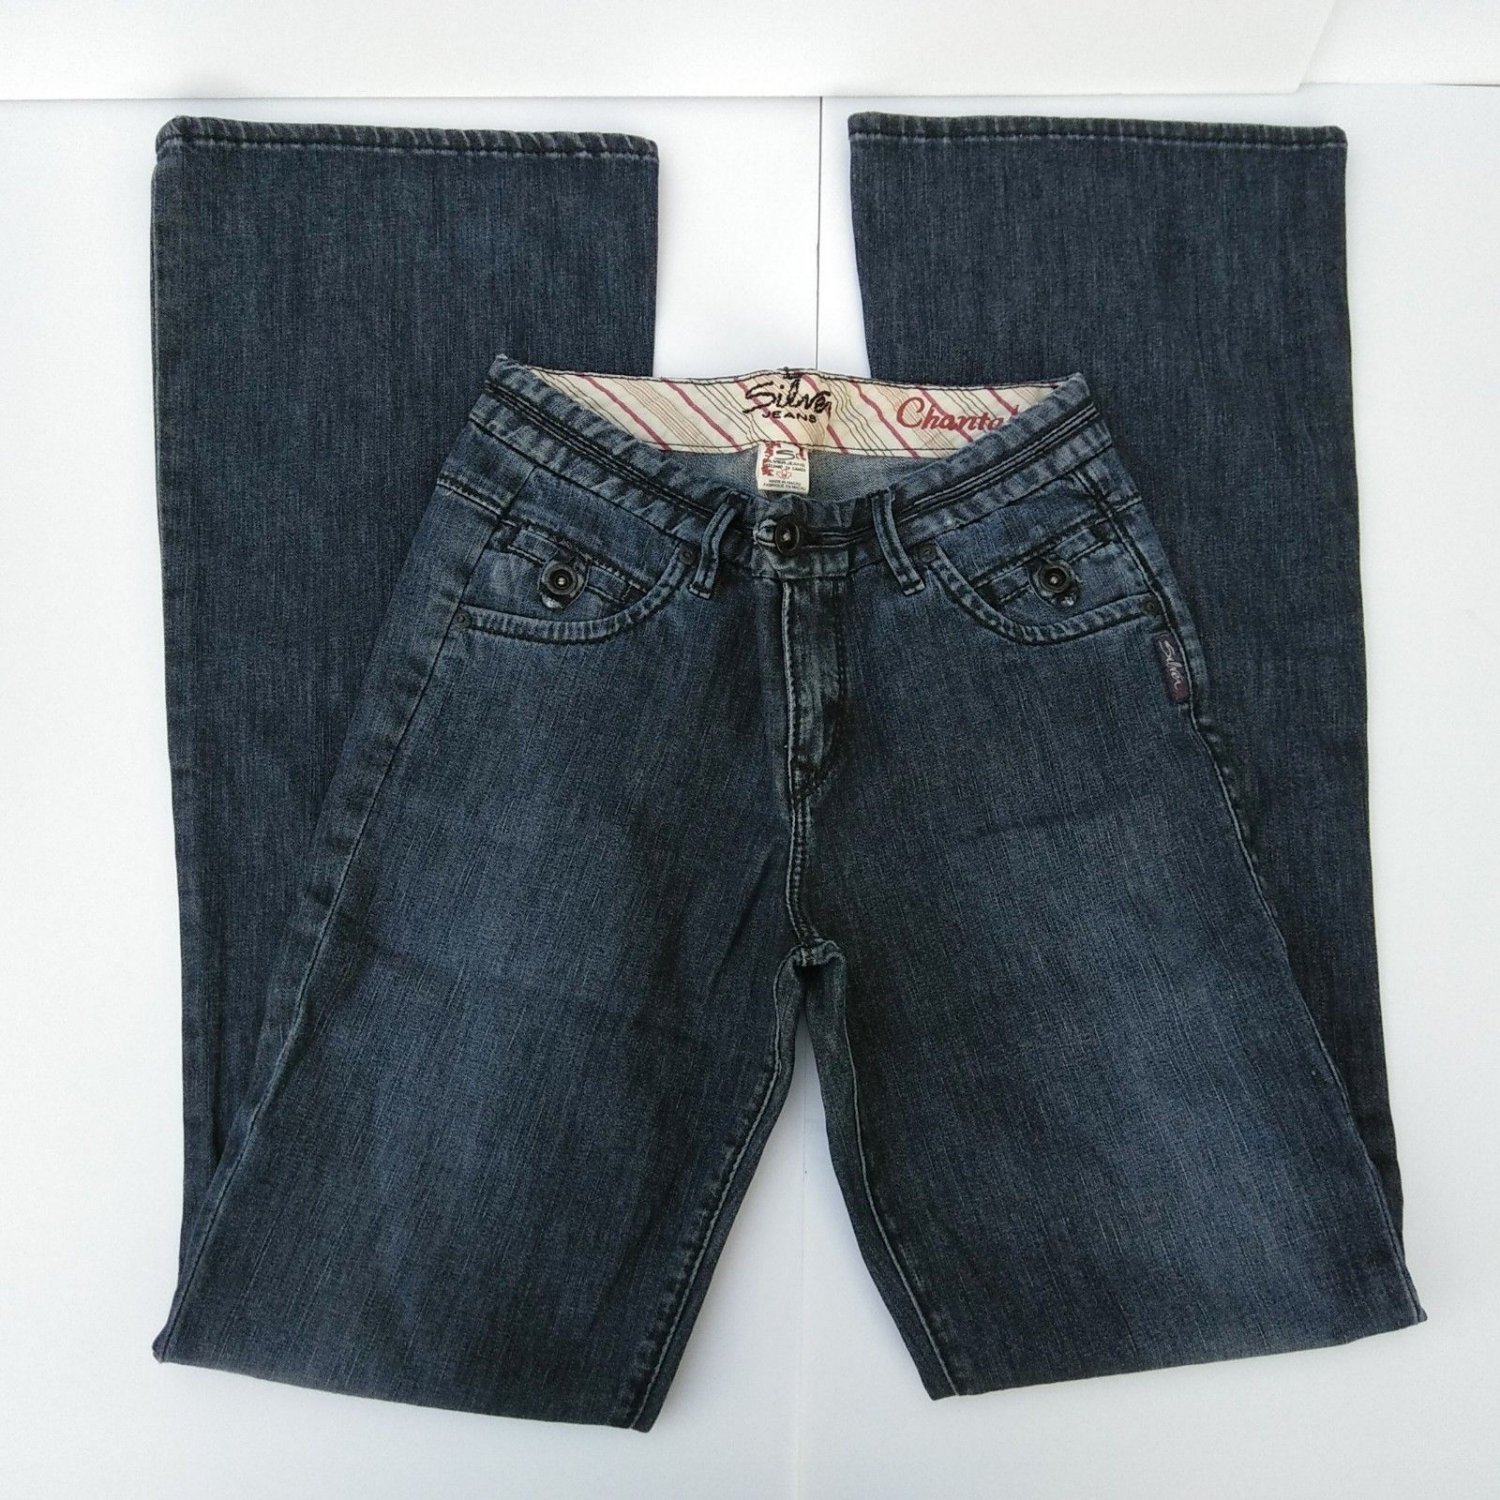 Silver Jeans Trousers Chantal Women's Size 26 L34